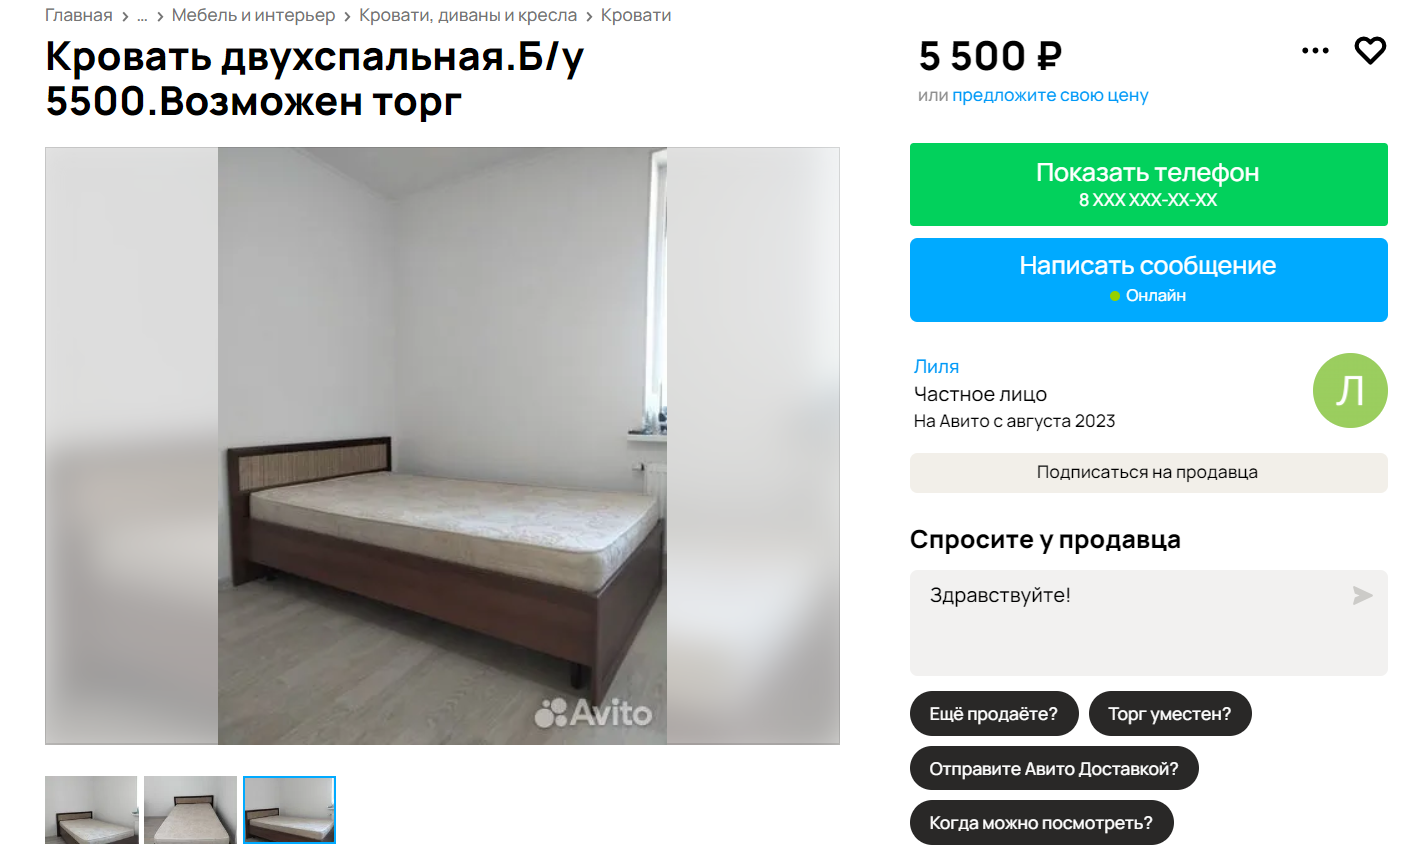 Кровать и диван в нормальном состоянии продают за 5000—10 000 ₽